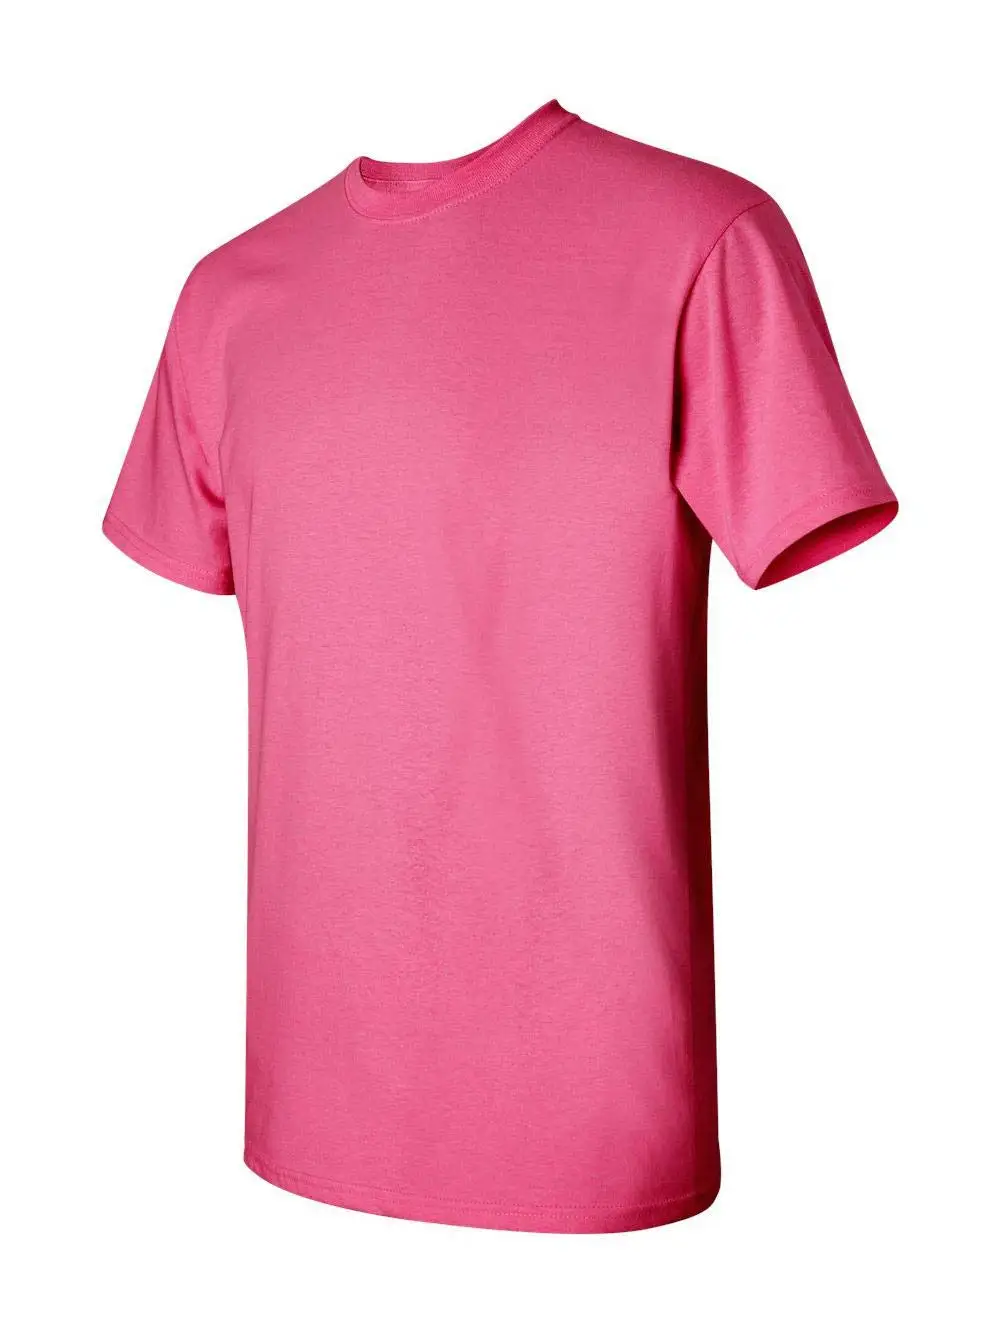 Mens T-shirt Summer Men's 100% Cotton T-shirt Design Customized Logo T ...